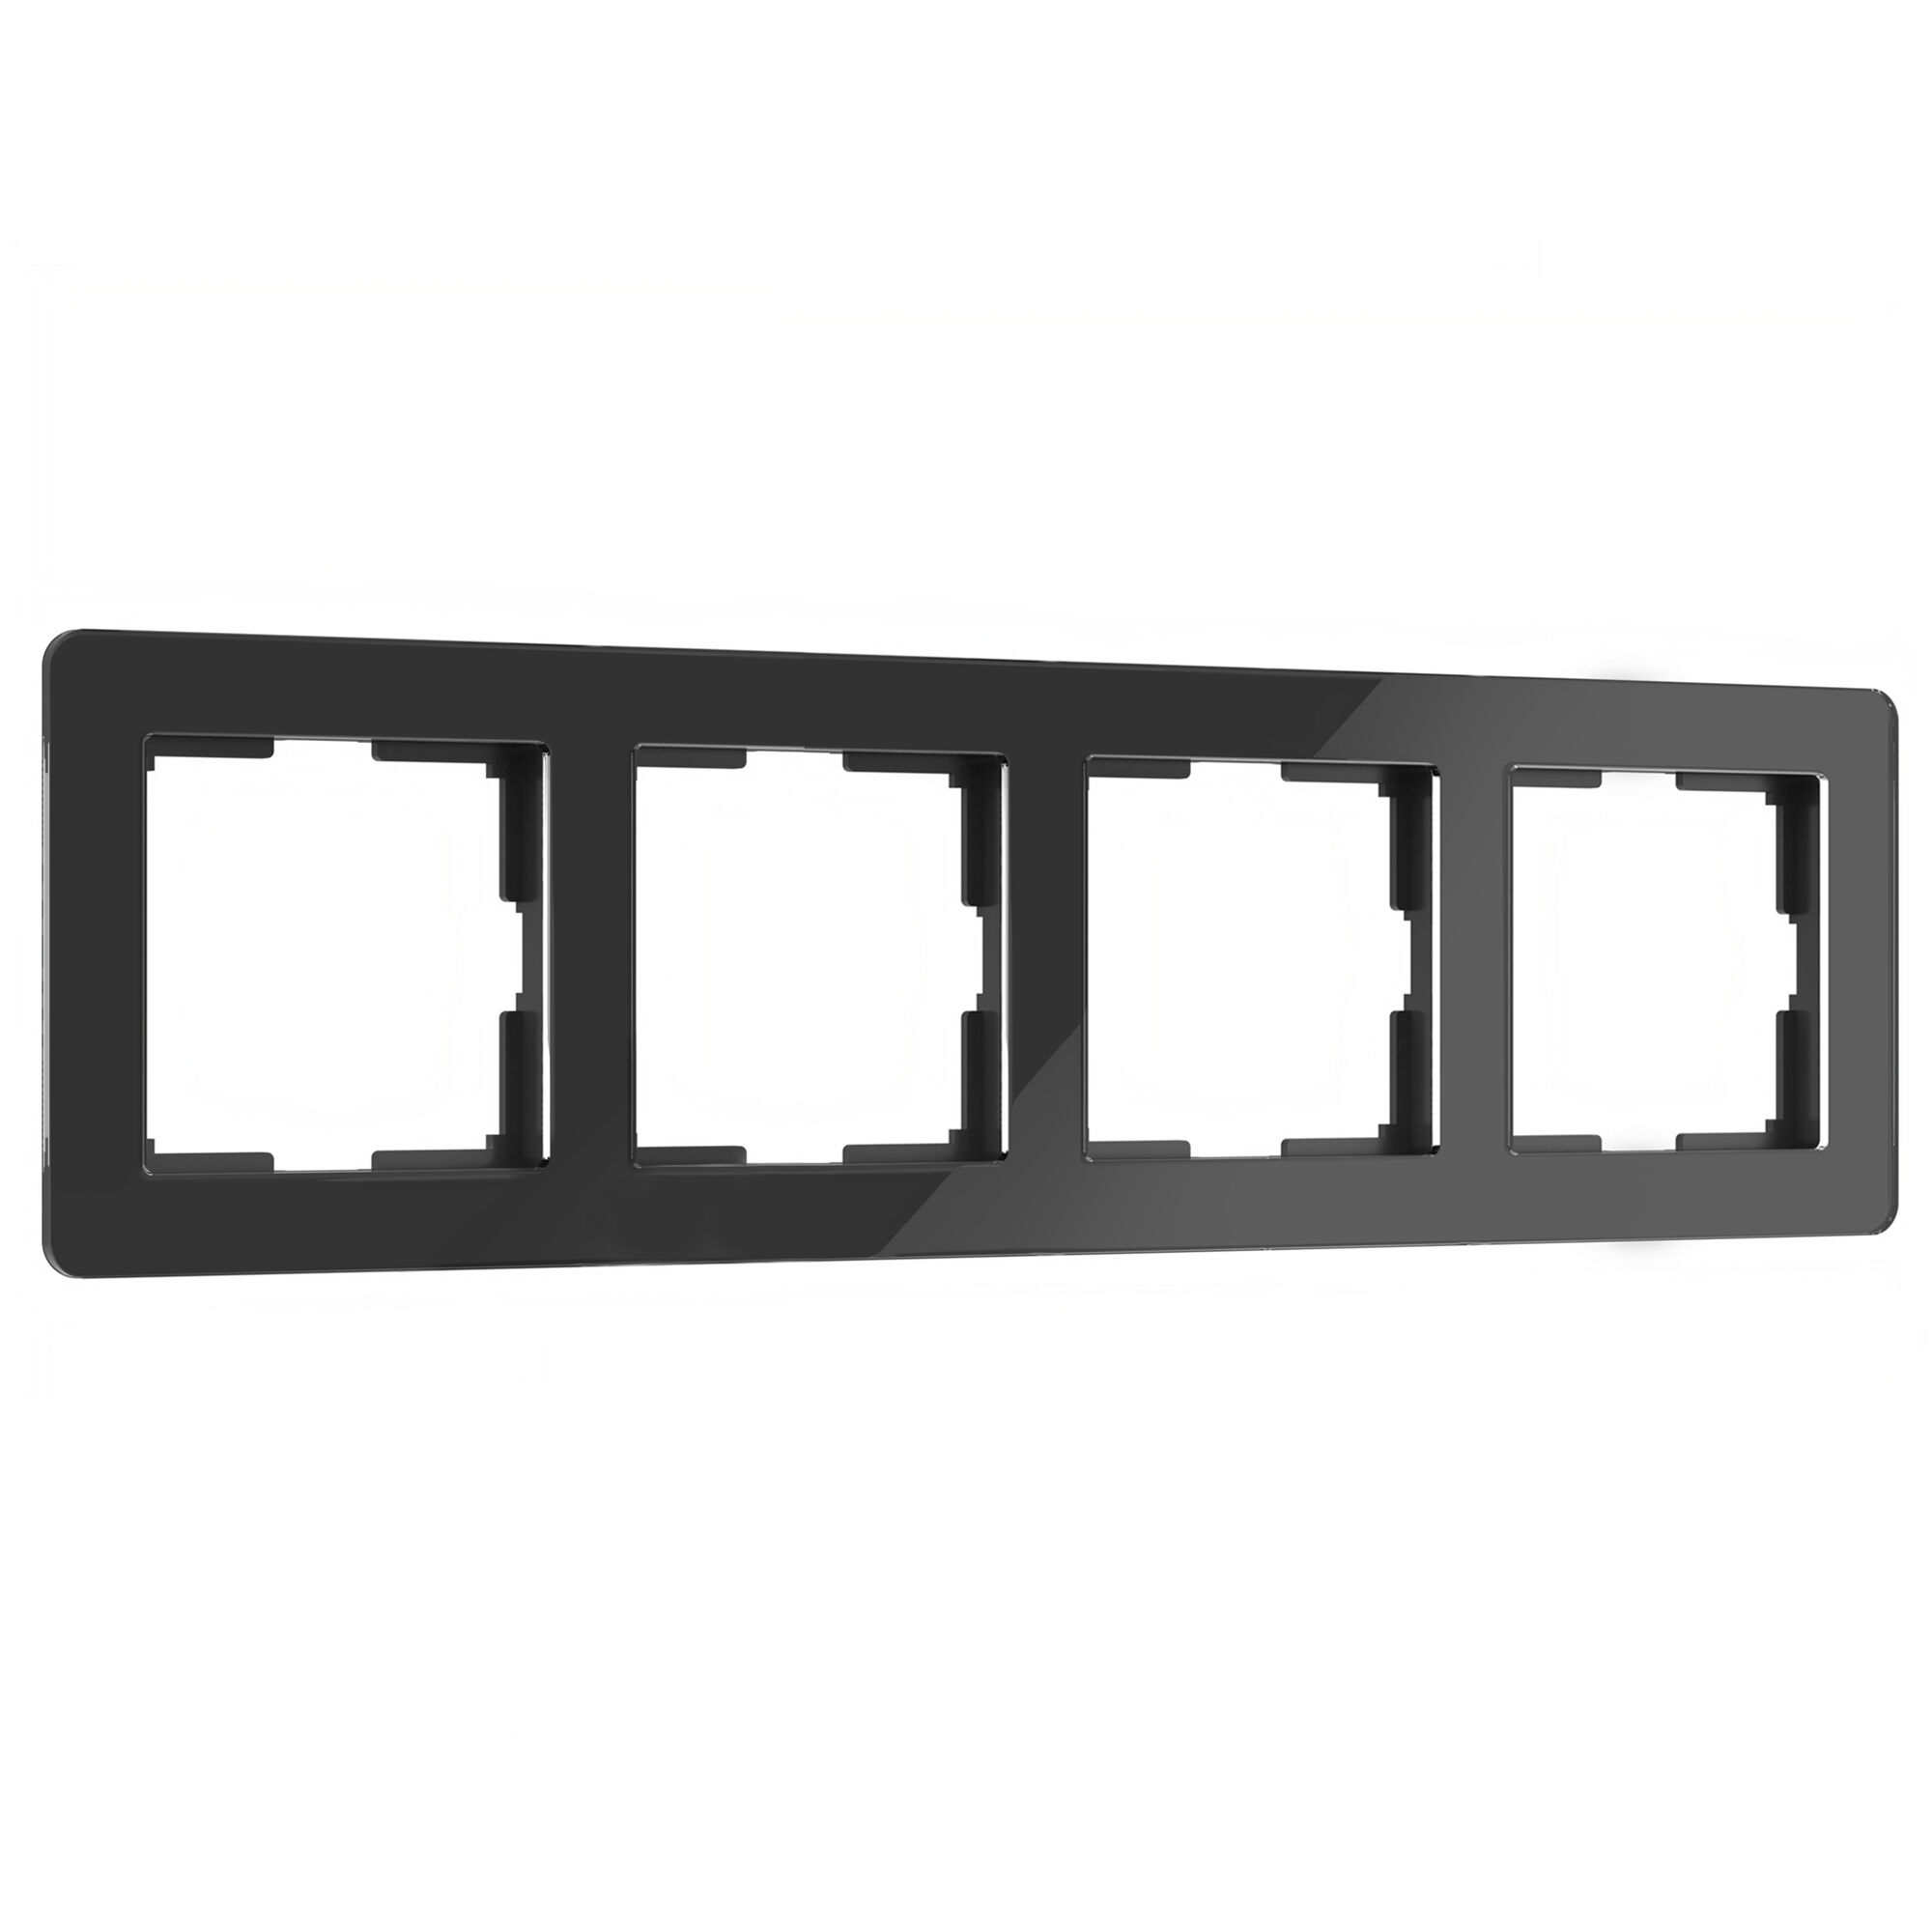 Рамка для розетки и выключателя на 4 поста Werkel Acrylic W0042708 черный из акрила рамка для розетки и выключателя на 4 поста werkel acrylic w0042704 графит из акрила